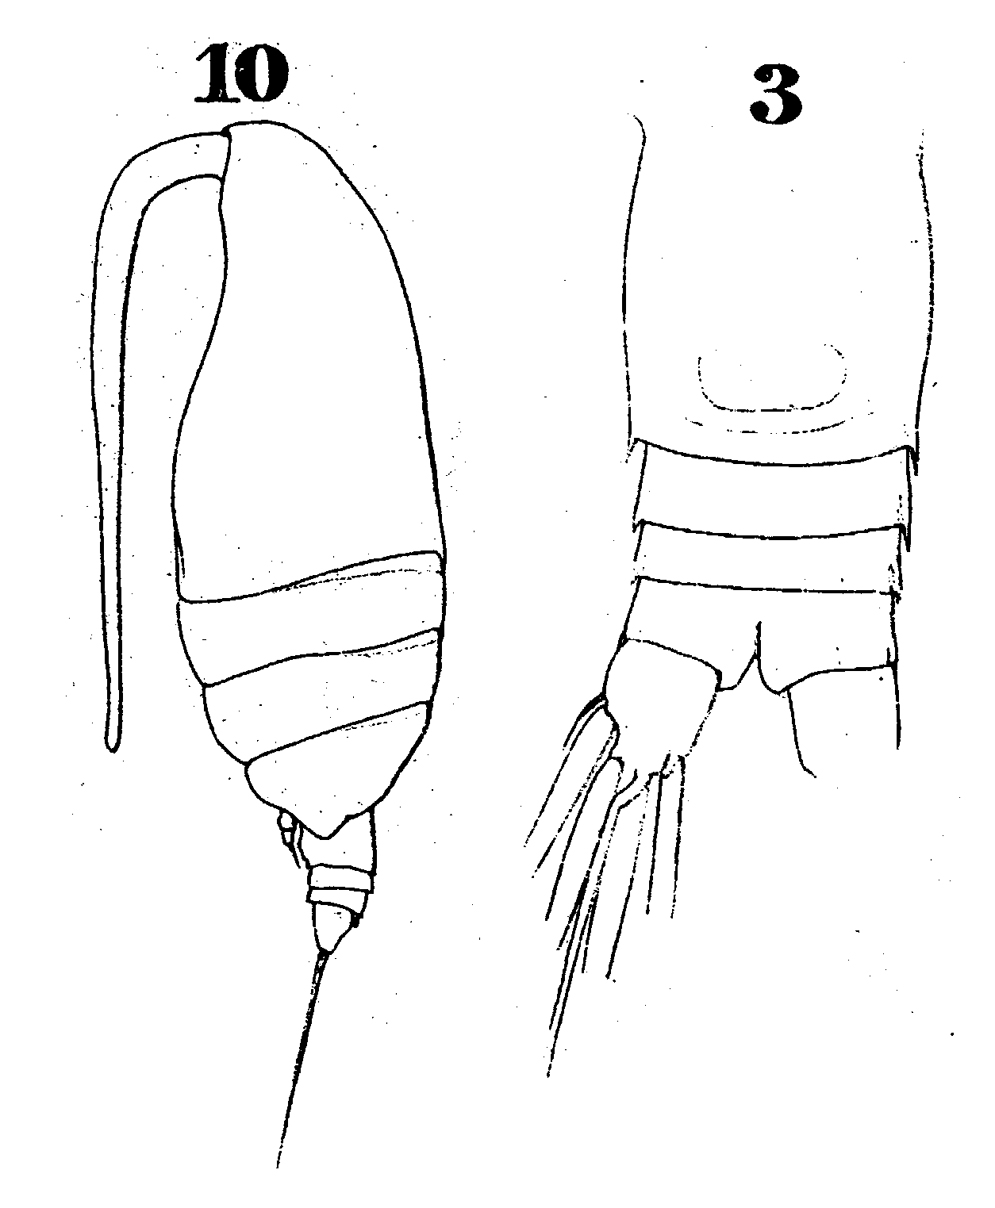 Espèce Archescolecithrix auropecten - Planche 12 de figures morphologiques